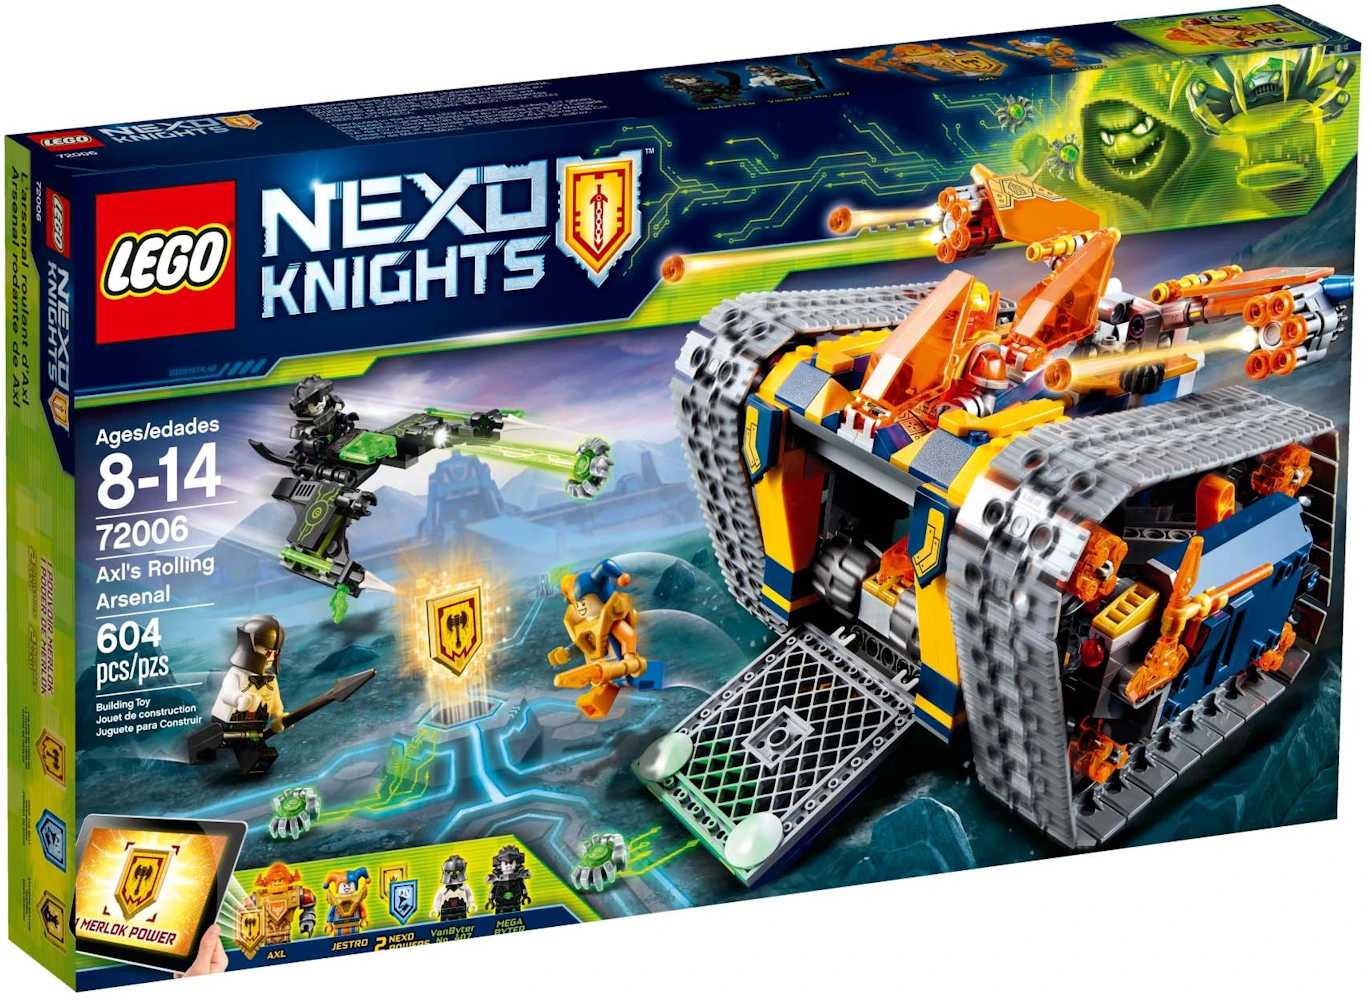 Mentor Populær Enlighten LEGO Nexo Knights Axl's Rolling Arsenal Set 72006 - US